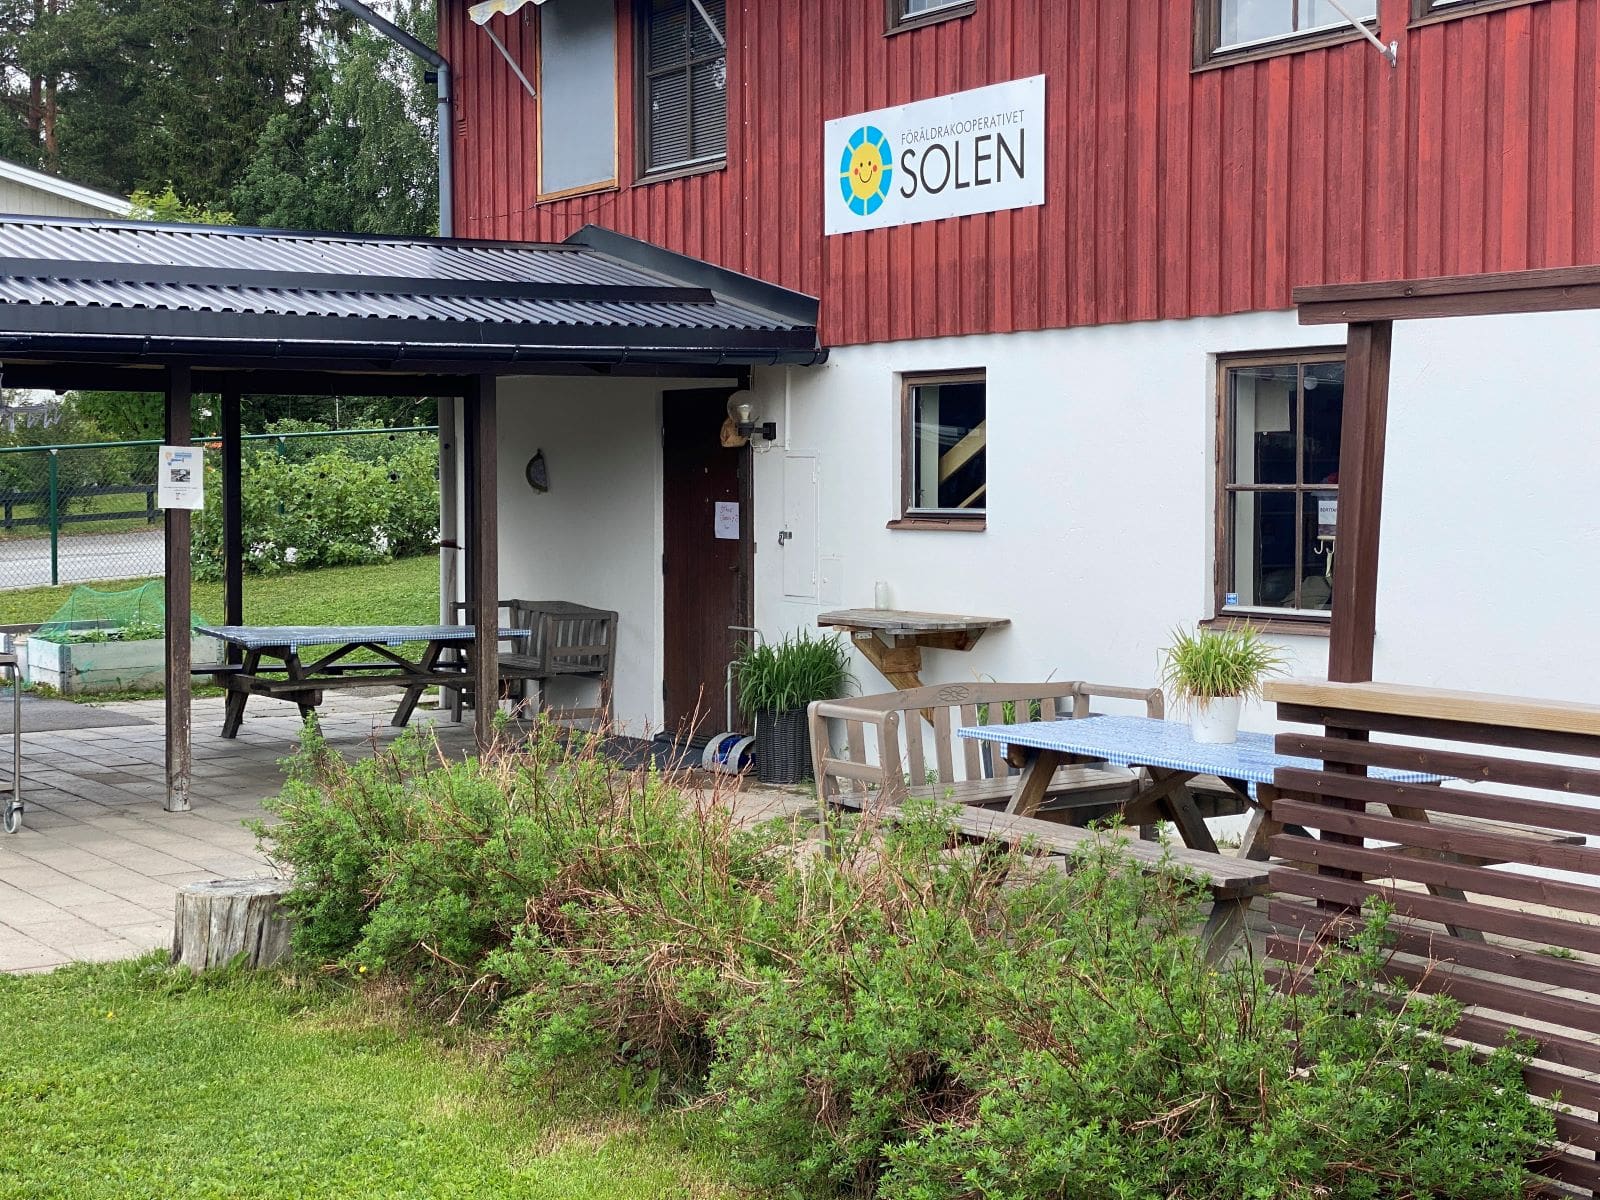 Föräldrakooperativet Solen | Förskola i Odensala, Östersund